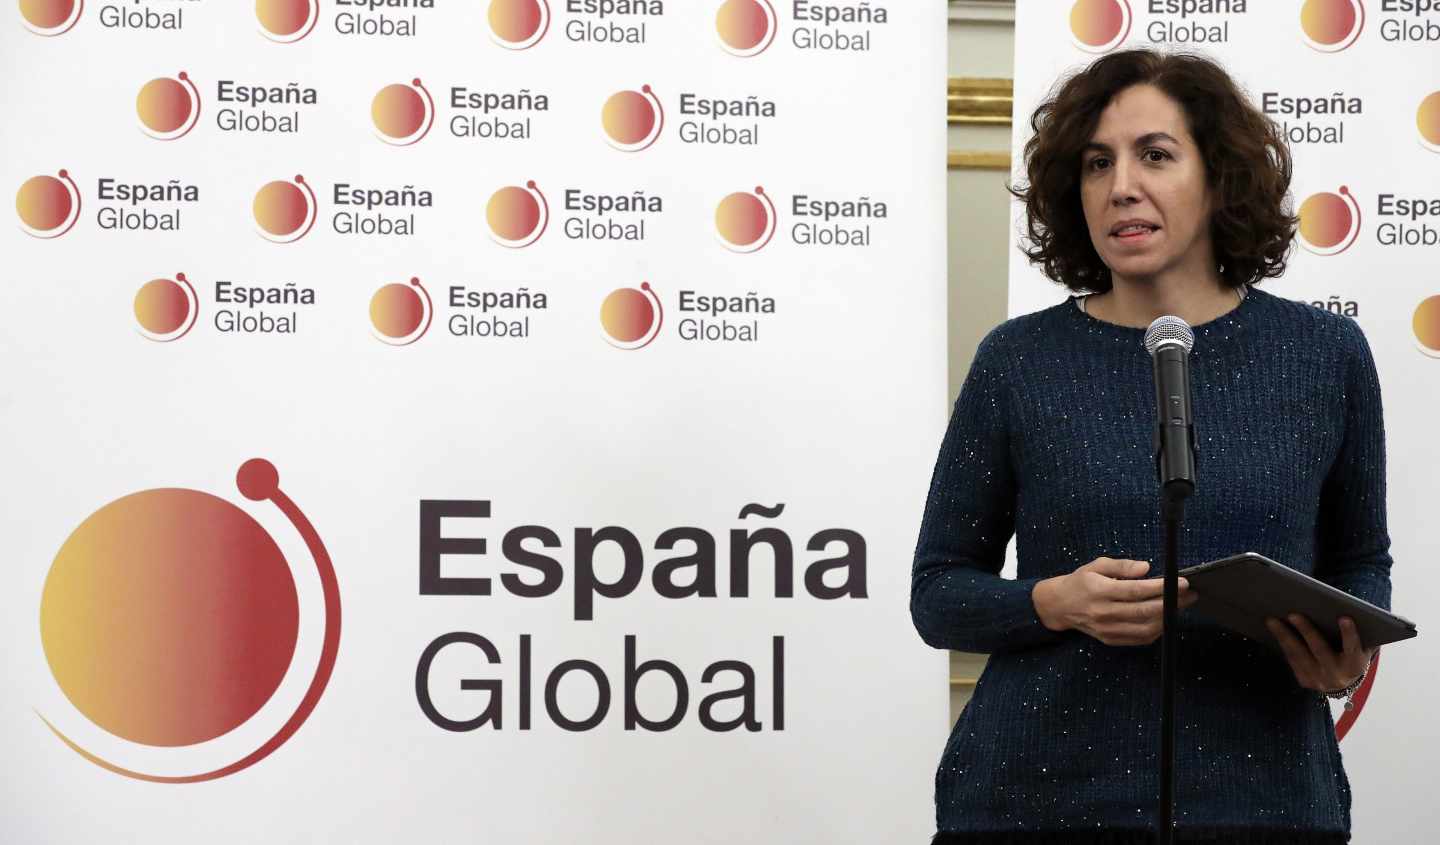 La secretaria de Estado de España Global, Irene Lozano, durante la presentación de la nueva imagen de la marca.